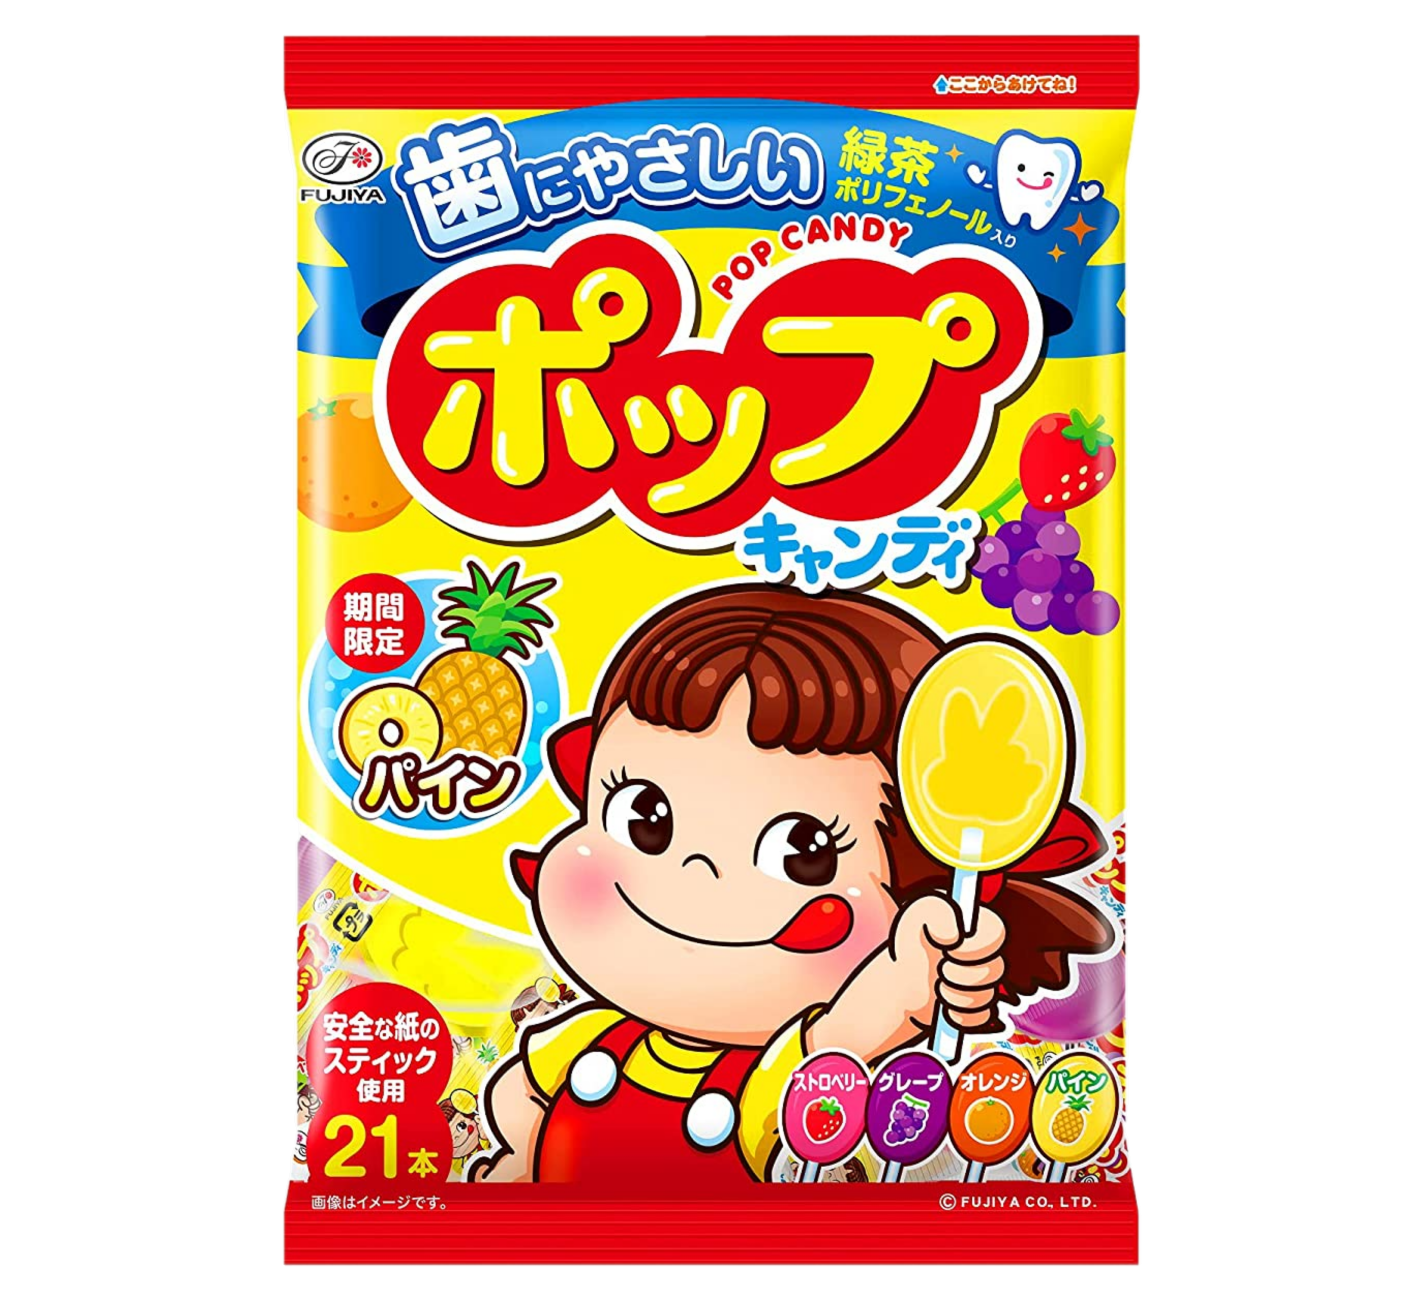 Fujiya Peko pop candy